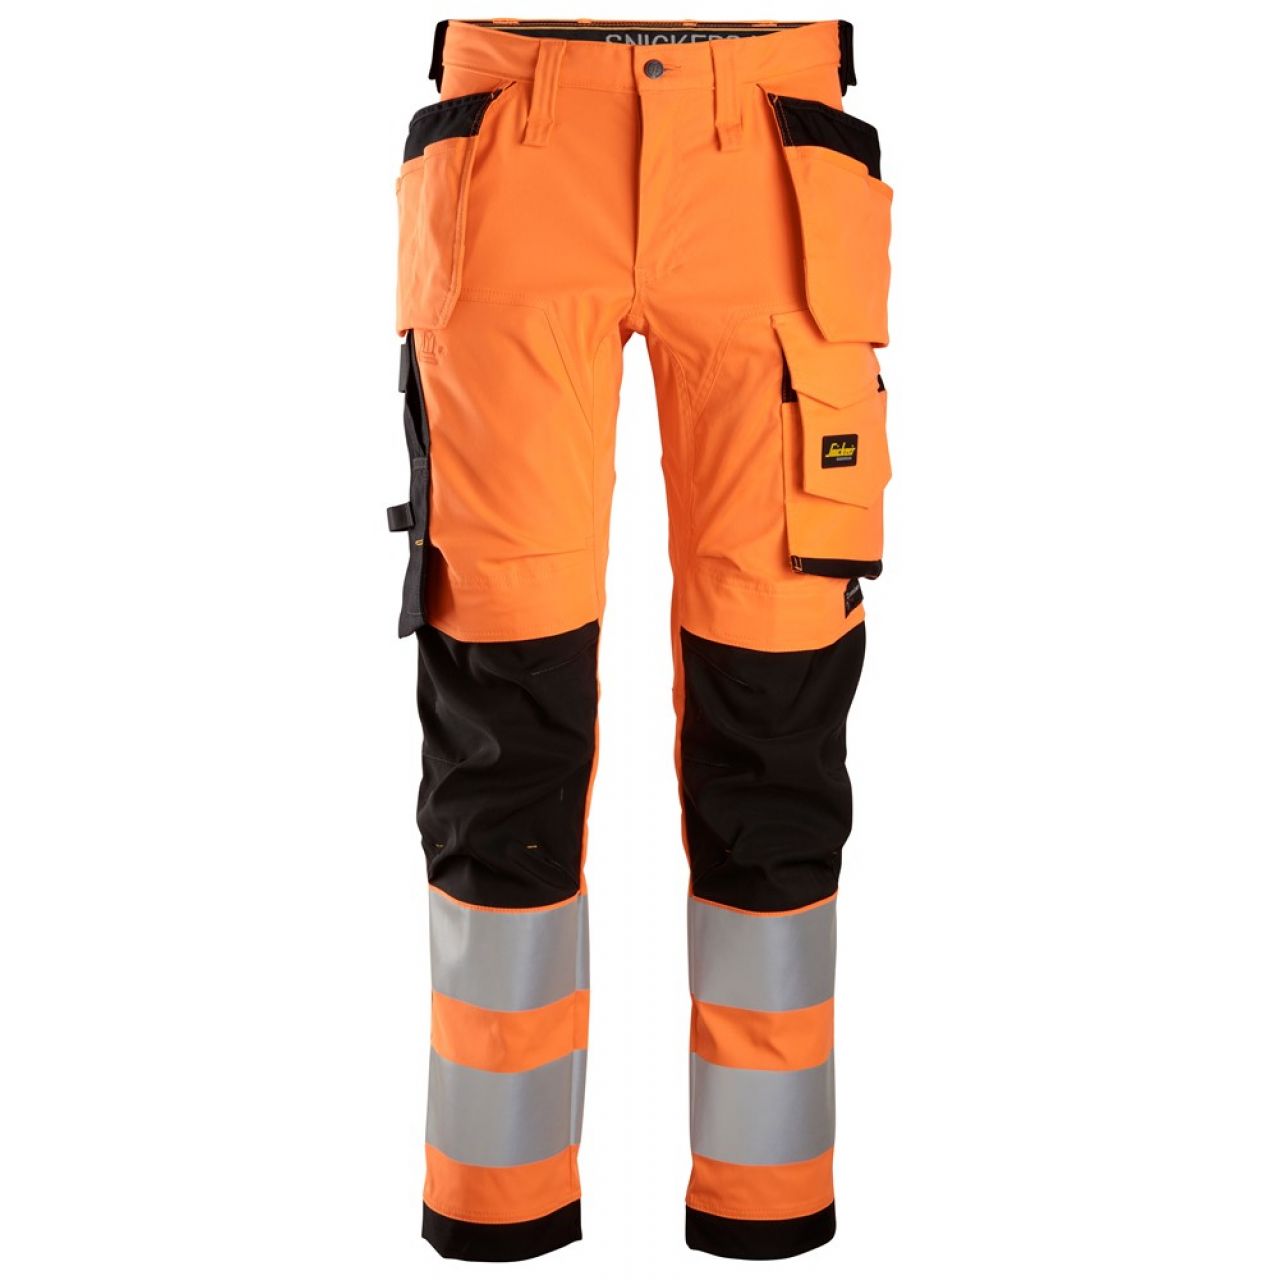 6243 Pantalones largos de trabajo elásticos de alta visibilidad clase 2 con bolsillos flotantes naranja-negro talla 96